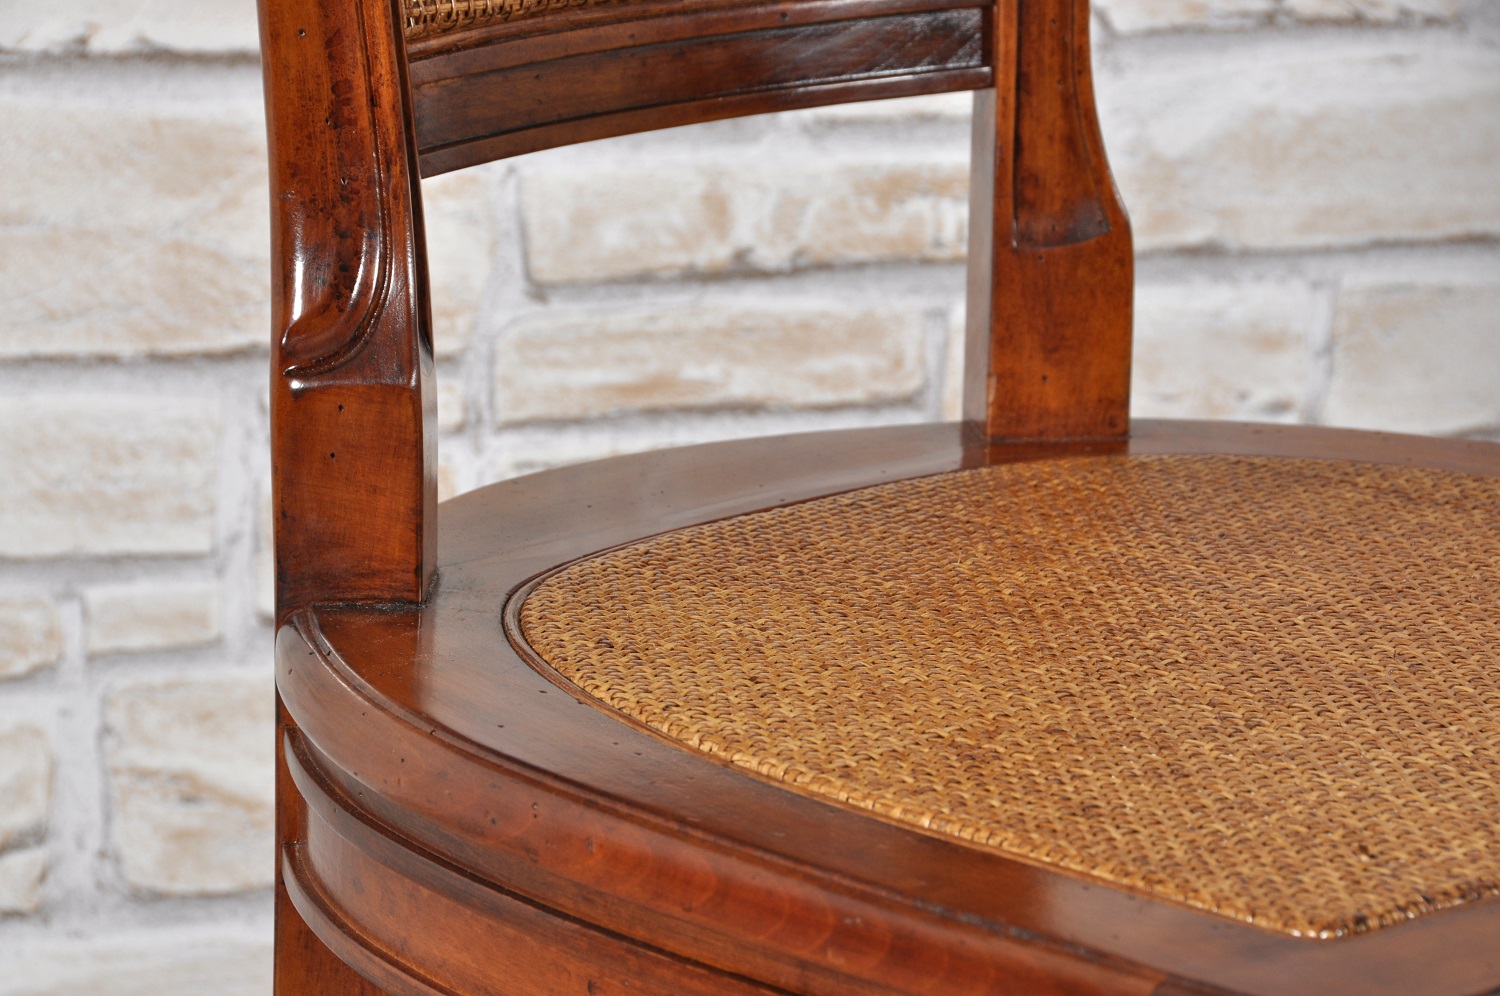 sedia di produzione made in Italy in stile classico asolano Veneto legno di ciliegio arredo del 1700 con schienale e seduta in paglia di Vienna doppia